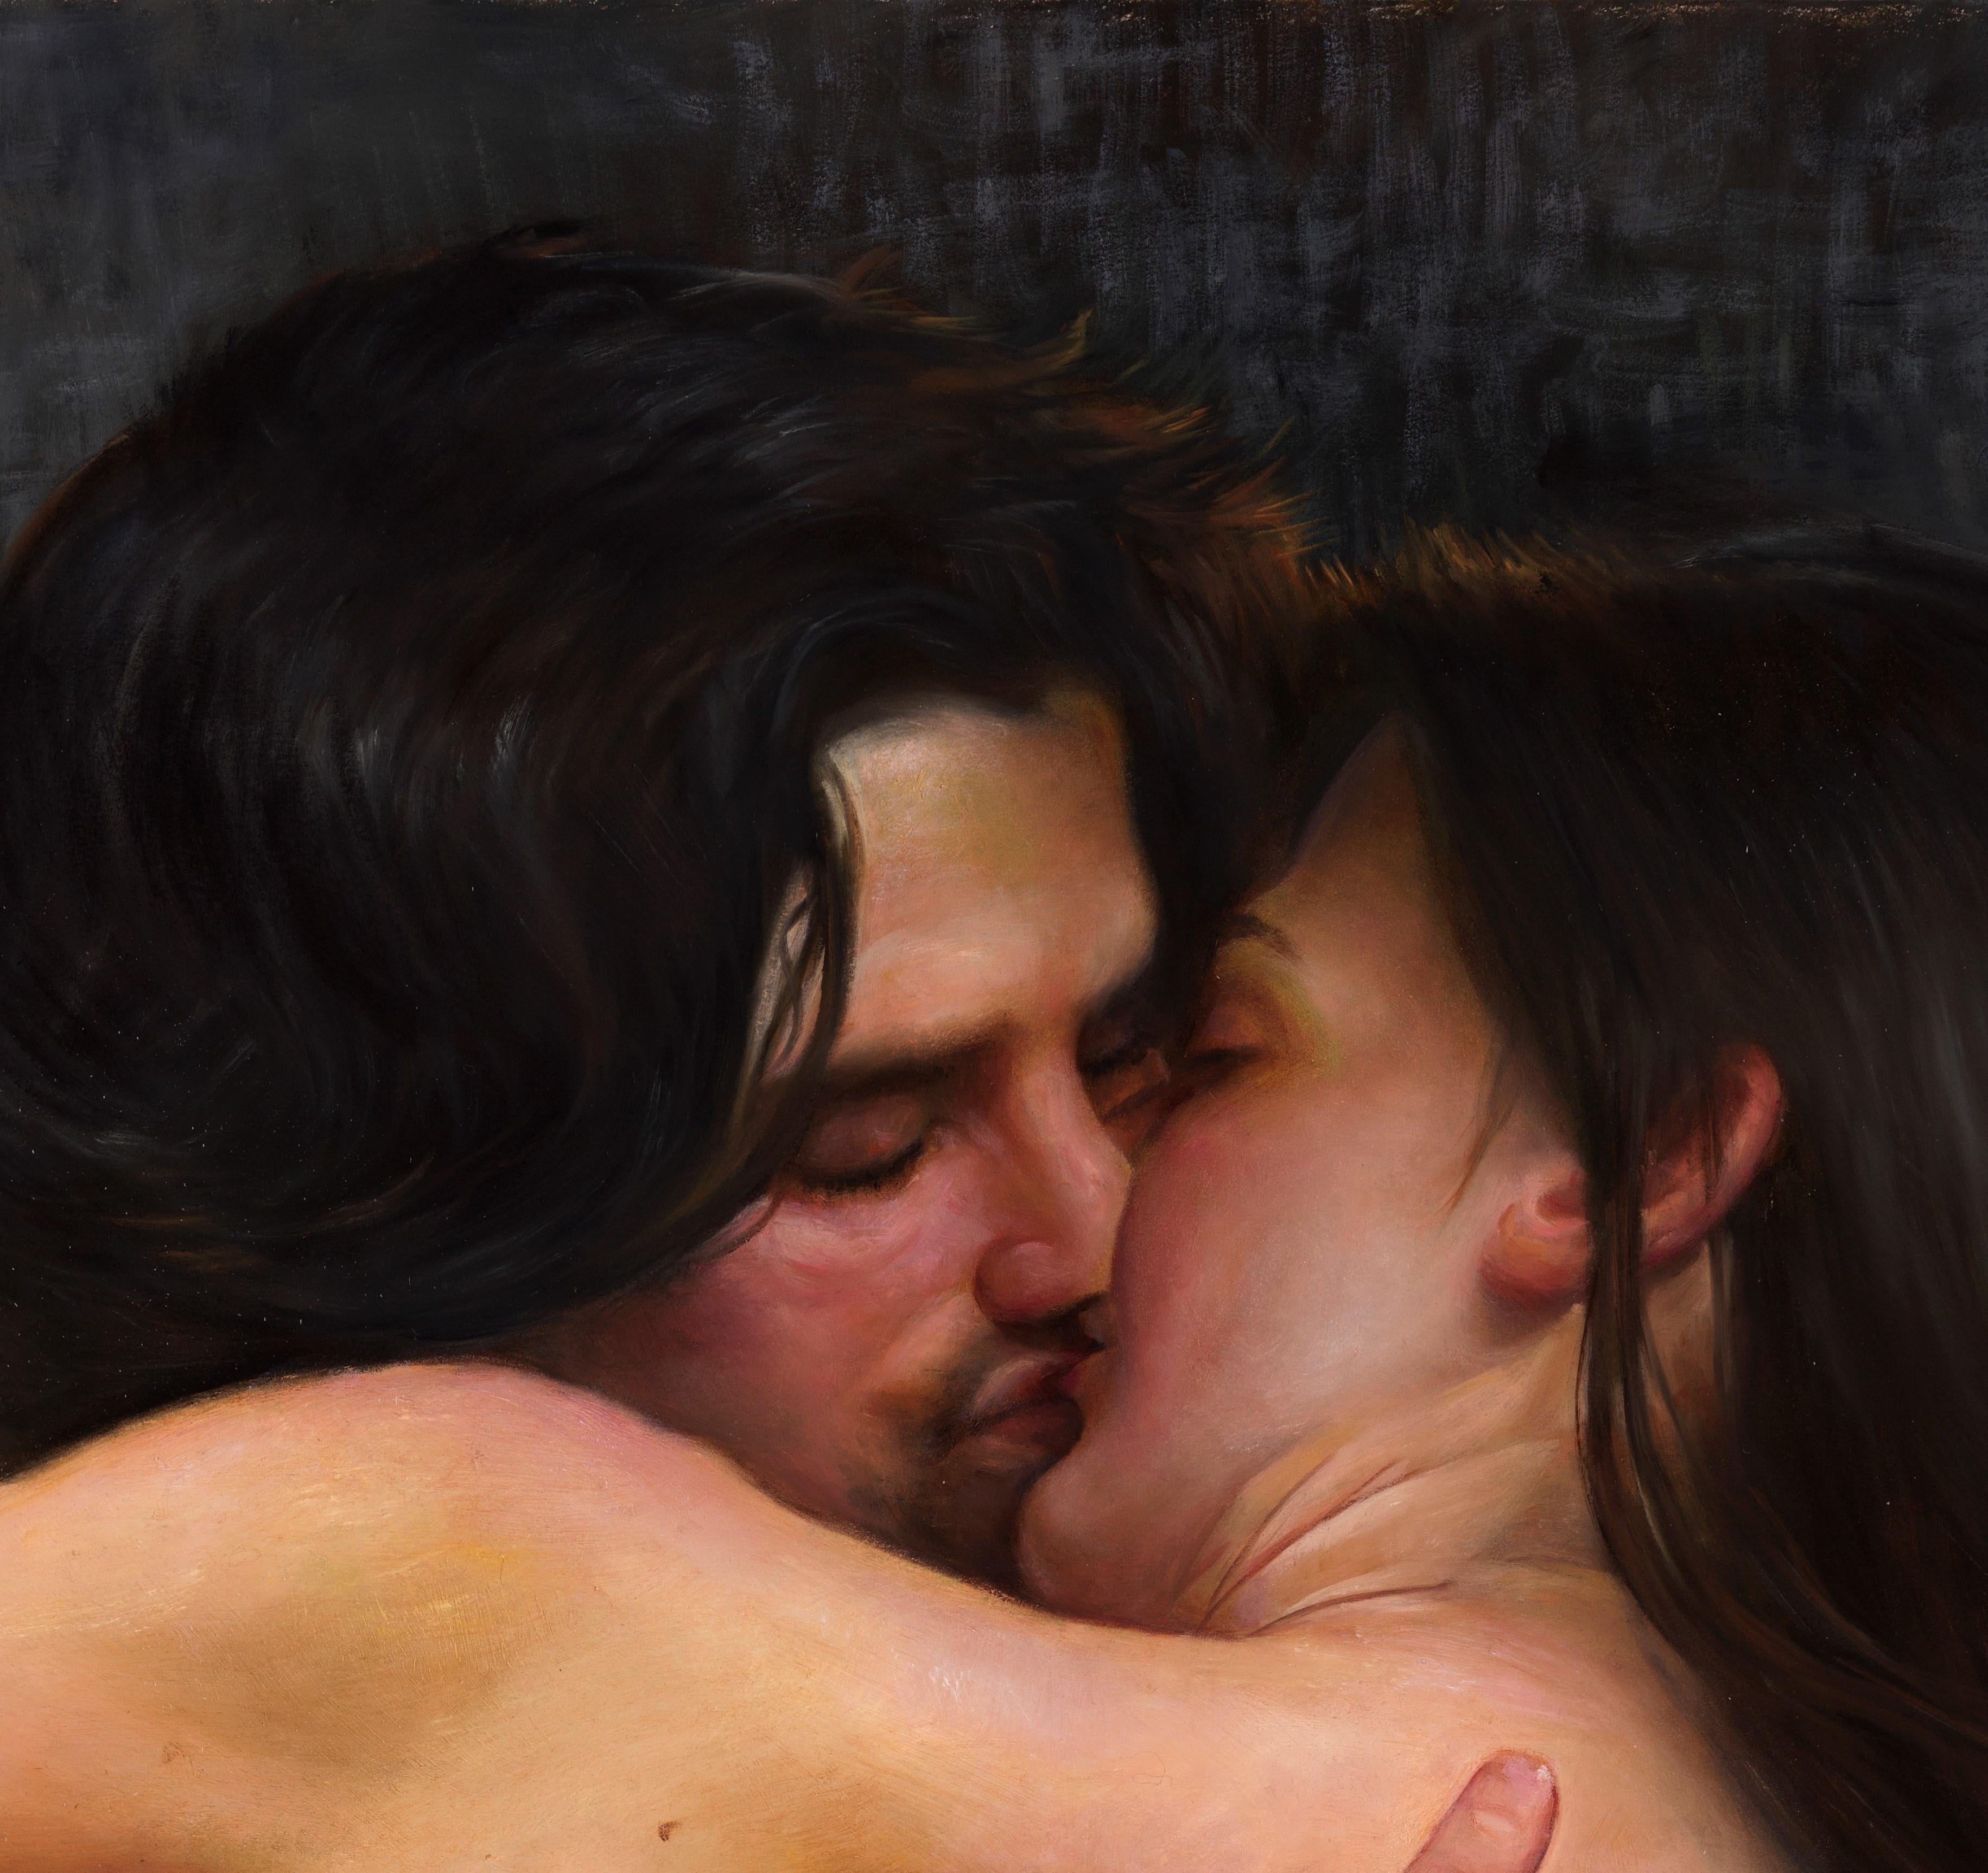 Desire - Lovers nus enlacés dans une bague passionnée, huile sur papier sur toile - Painting de Bruno Surdo